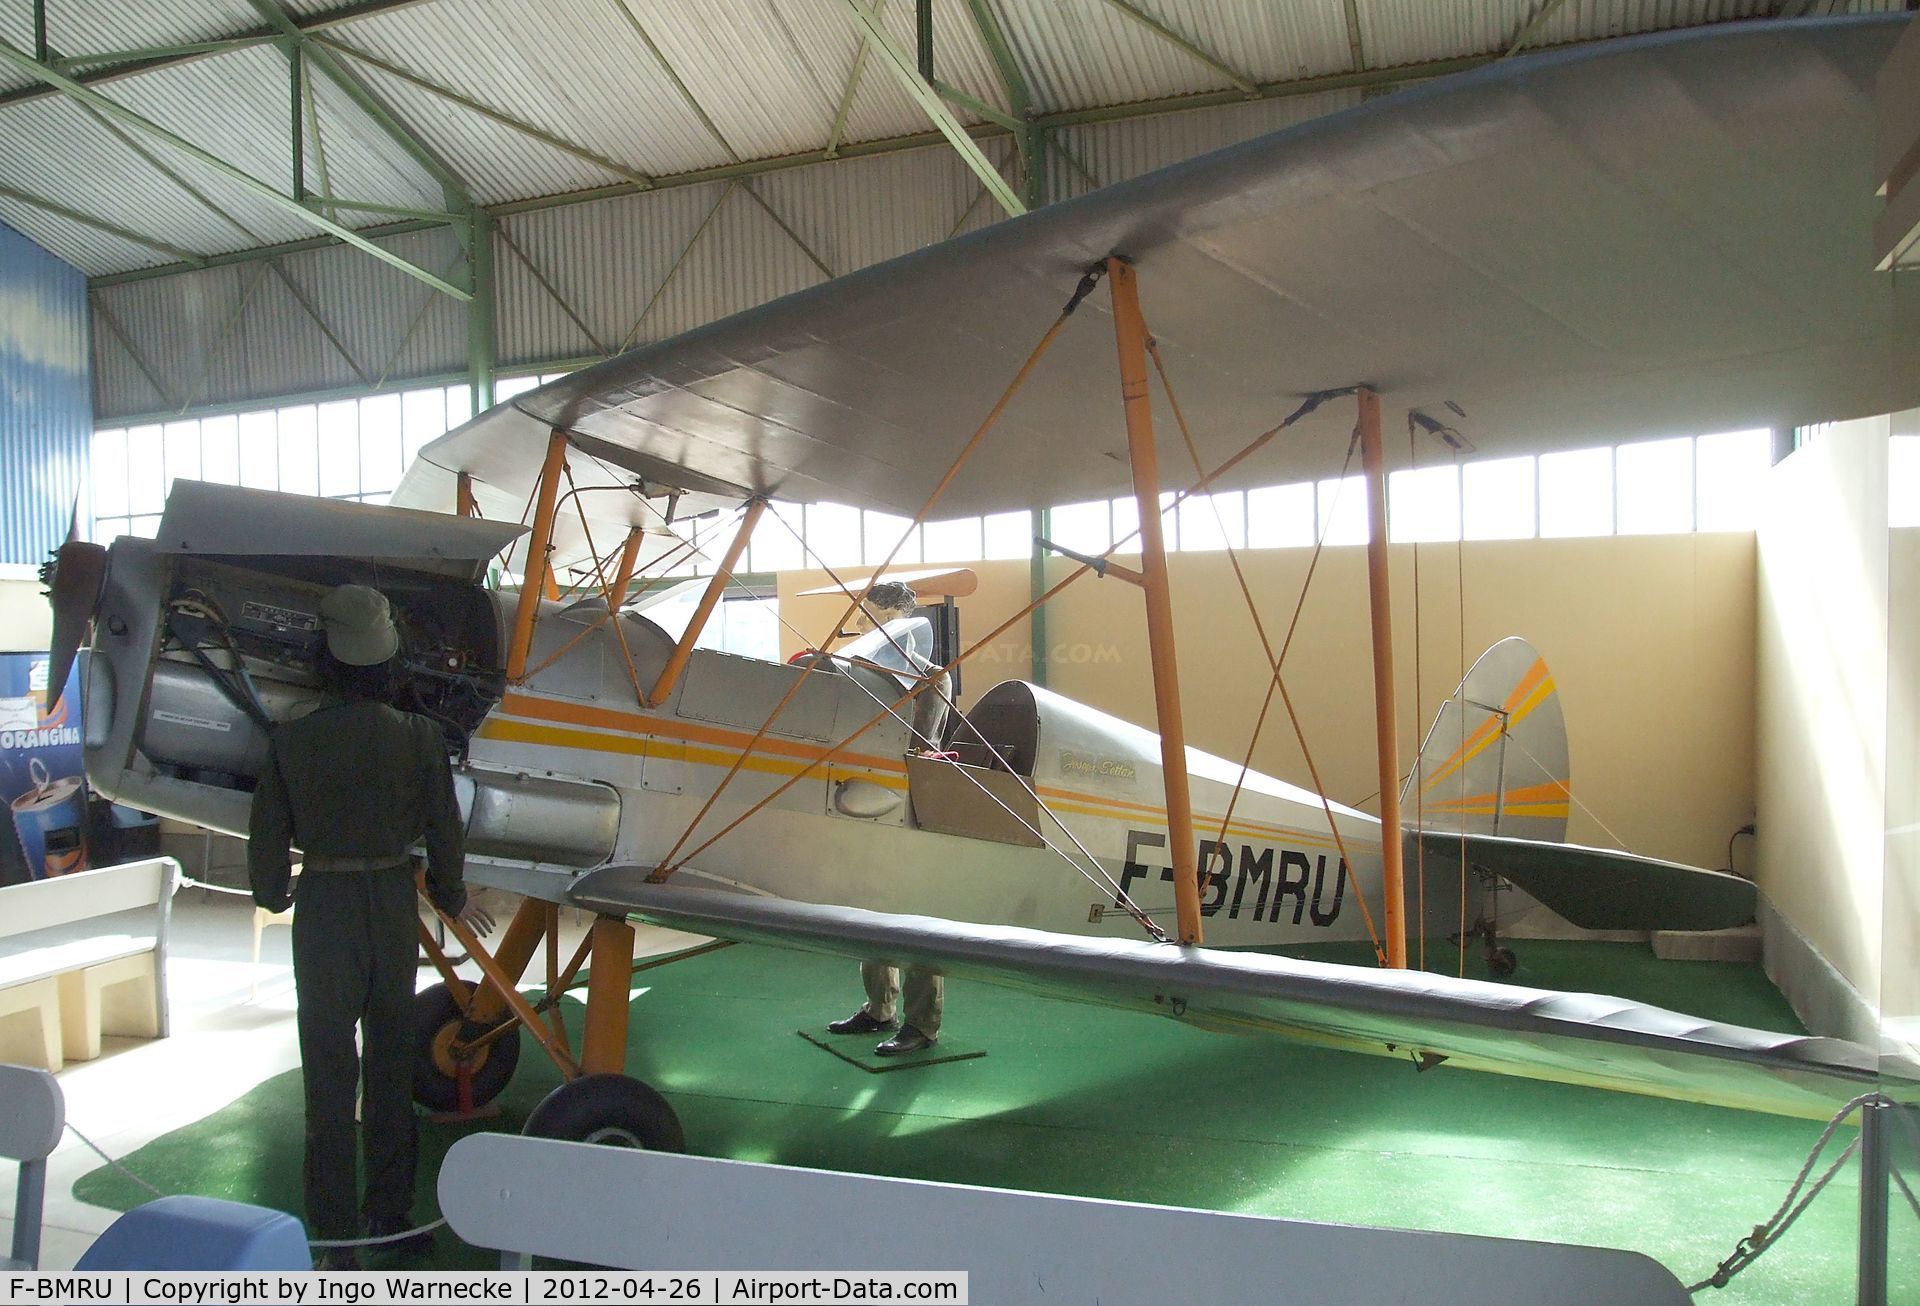 F-BMRU, Stampe-Vertongen SV-4C C/N 643, Stampe-Vertongen SV-4C at the Musée Européen de l'Aviation de Chasse, Montelimar Ancone airfield